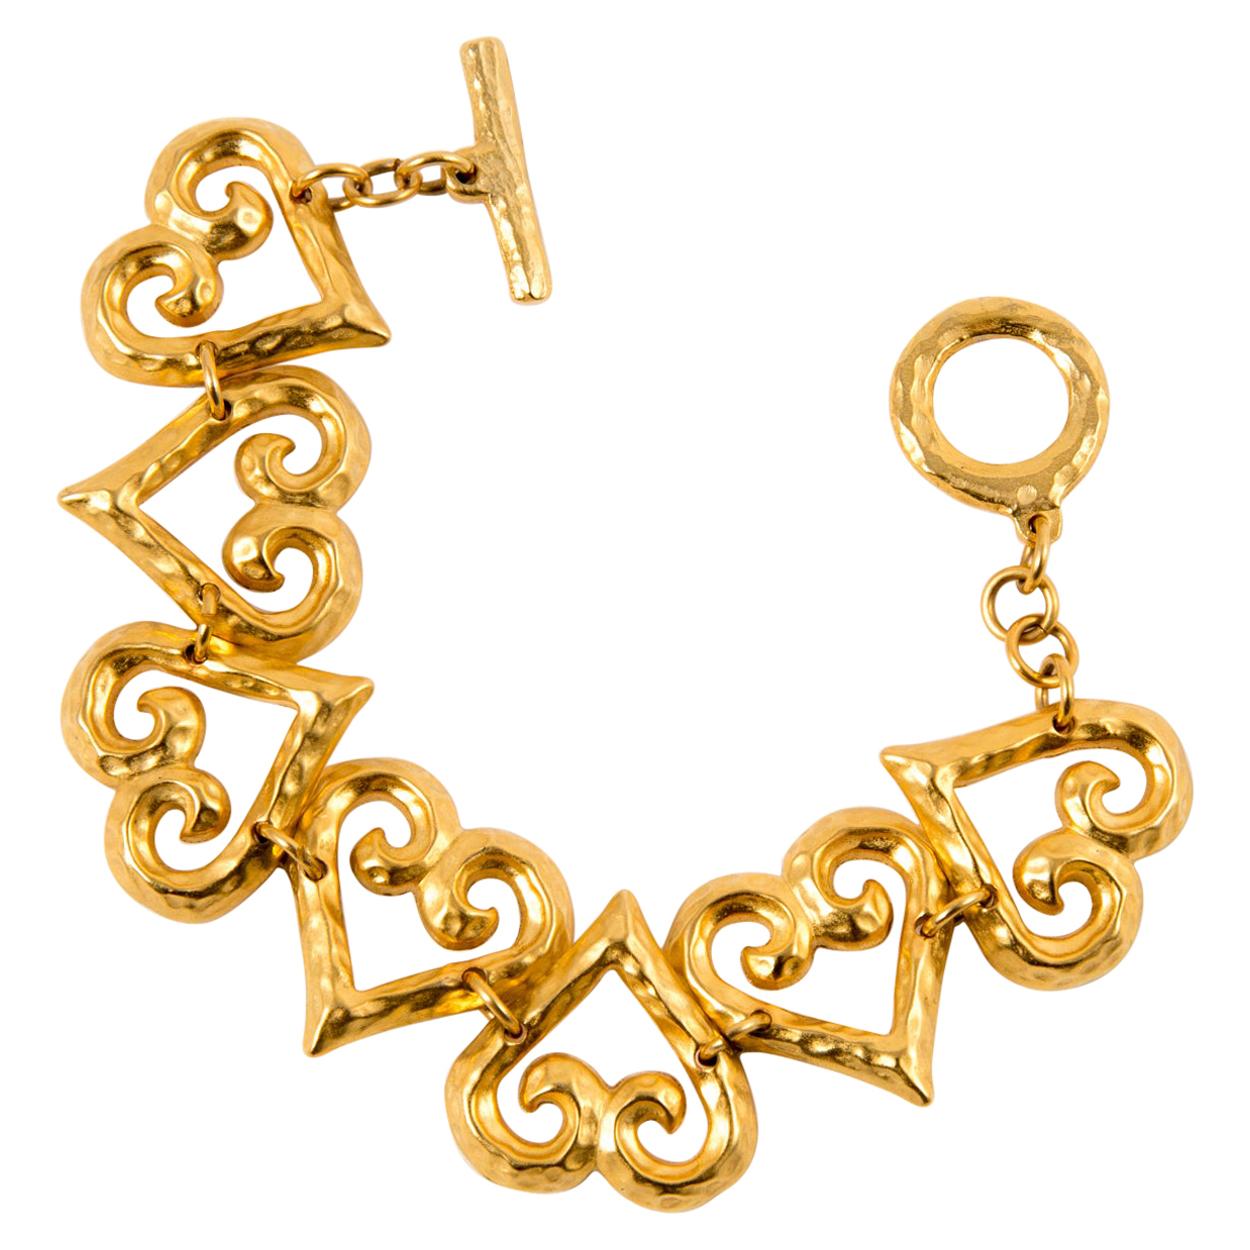 1980s Yves Saint Laurent Gold Tone Hearts Chain Bracelet